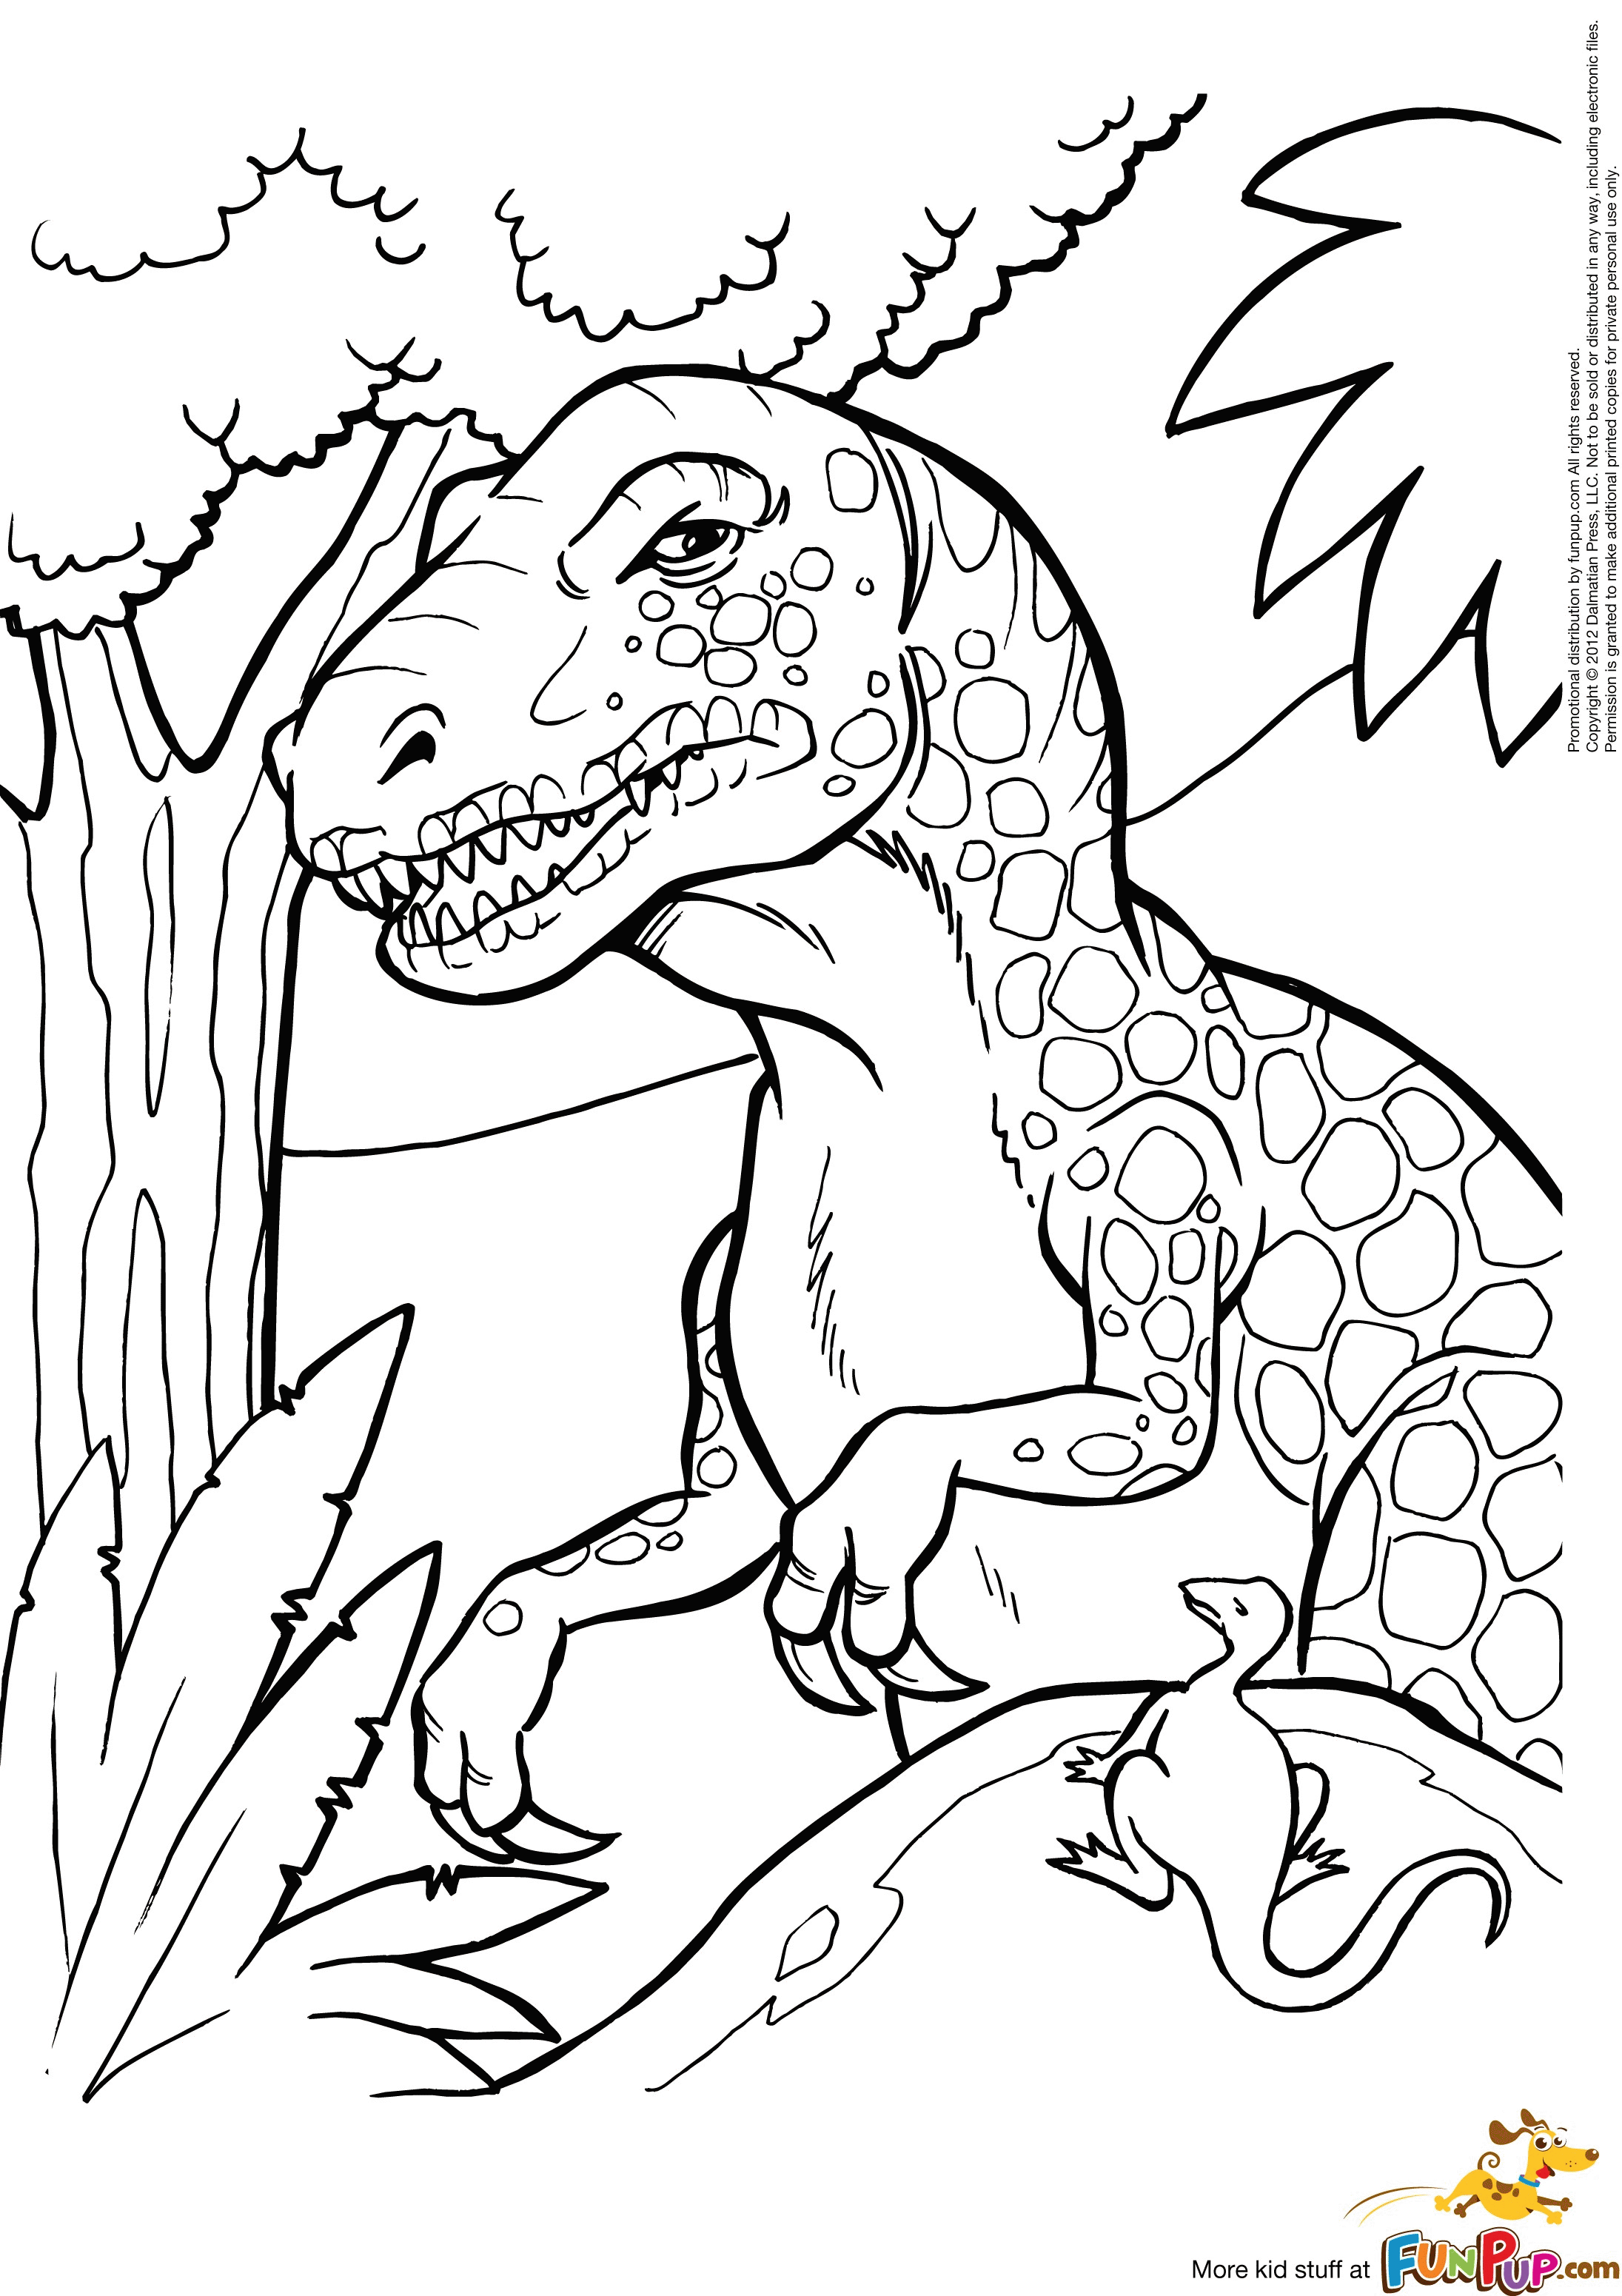 Раскраска динозавр формат а4. Динозавры / раскраска. Динозавр раскраска для детей. Рисунок динозавра для раскрашивания. Раскраска "Динозаврики".